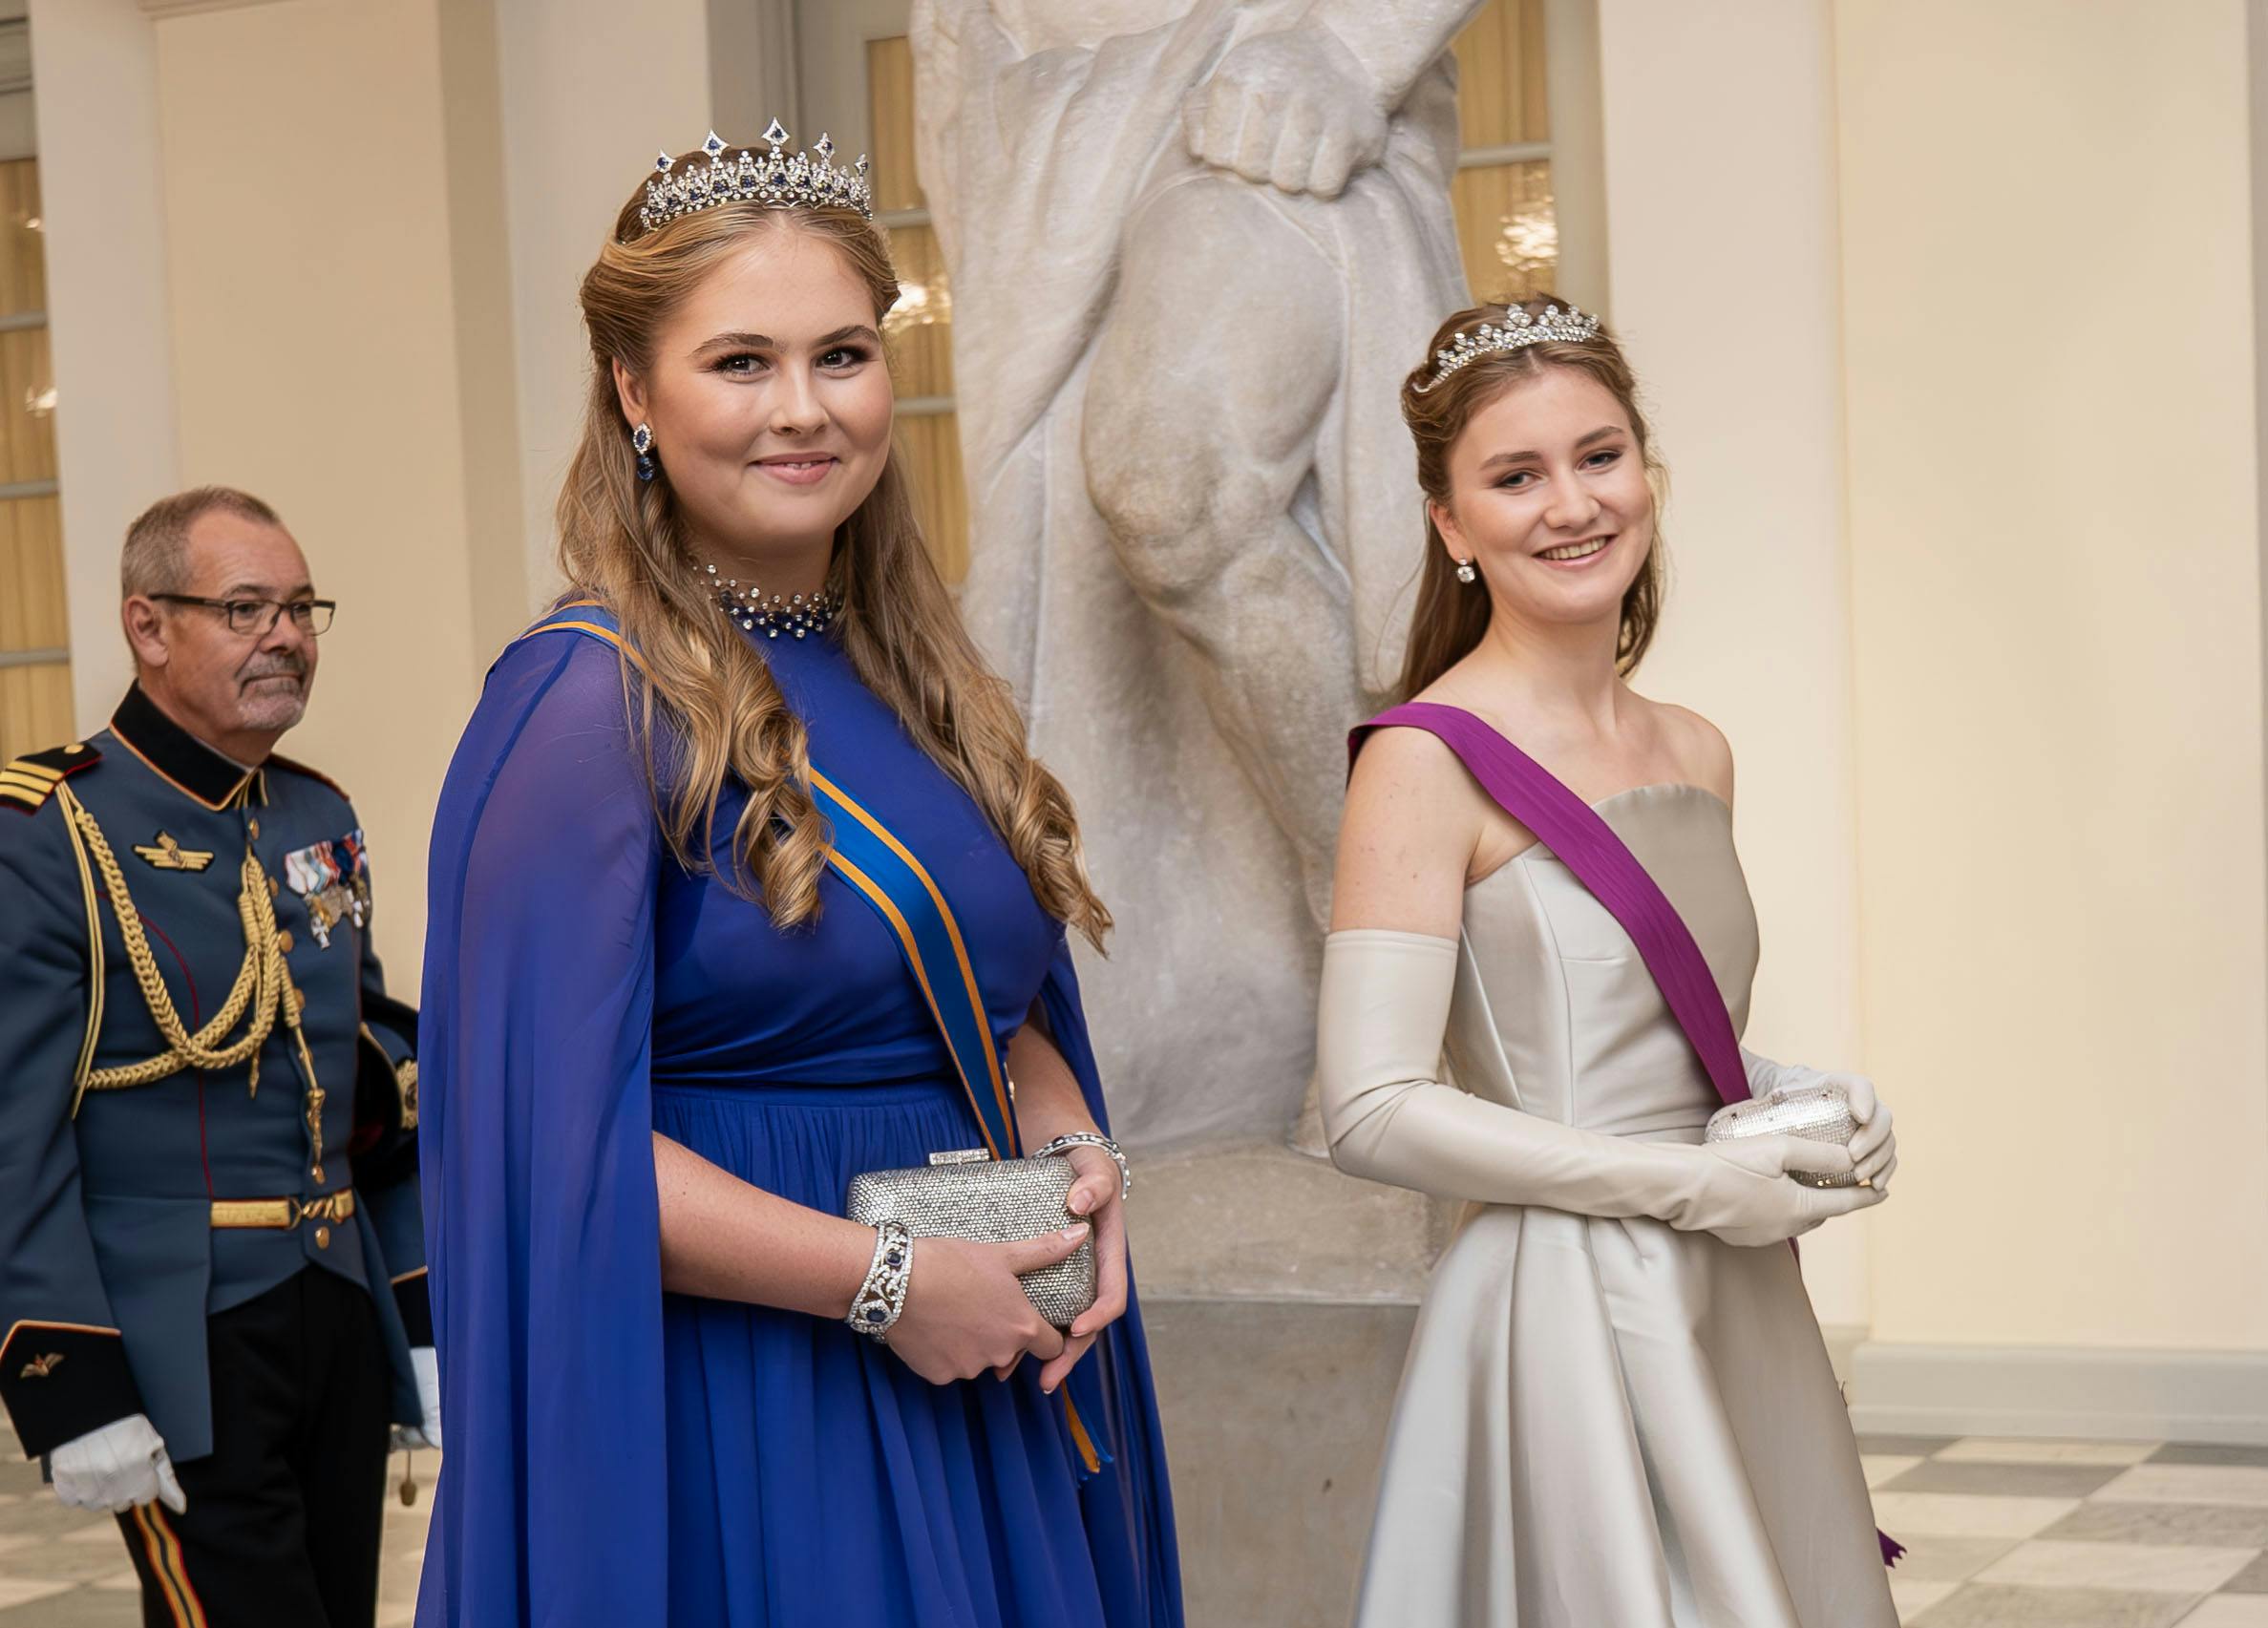 Her deltager prinsesse Amalia – klædt i blåt – til kronprins Christians 18-års fødselsdag tilbage i oktober. Sammen med hende ses Belgiens tronfølger Elisabeth. 